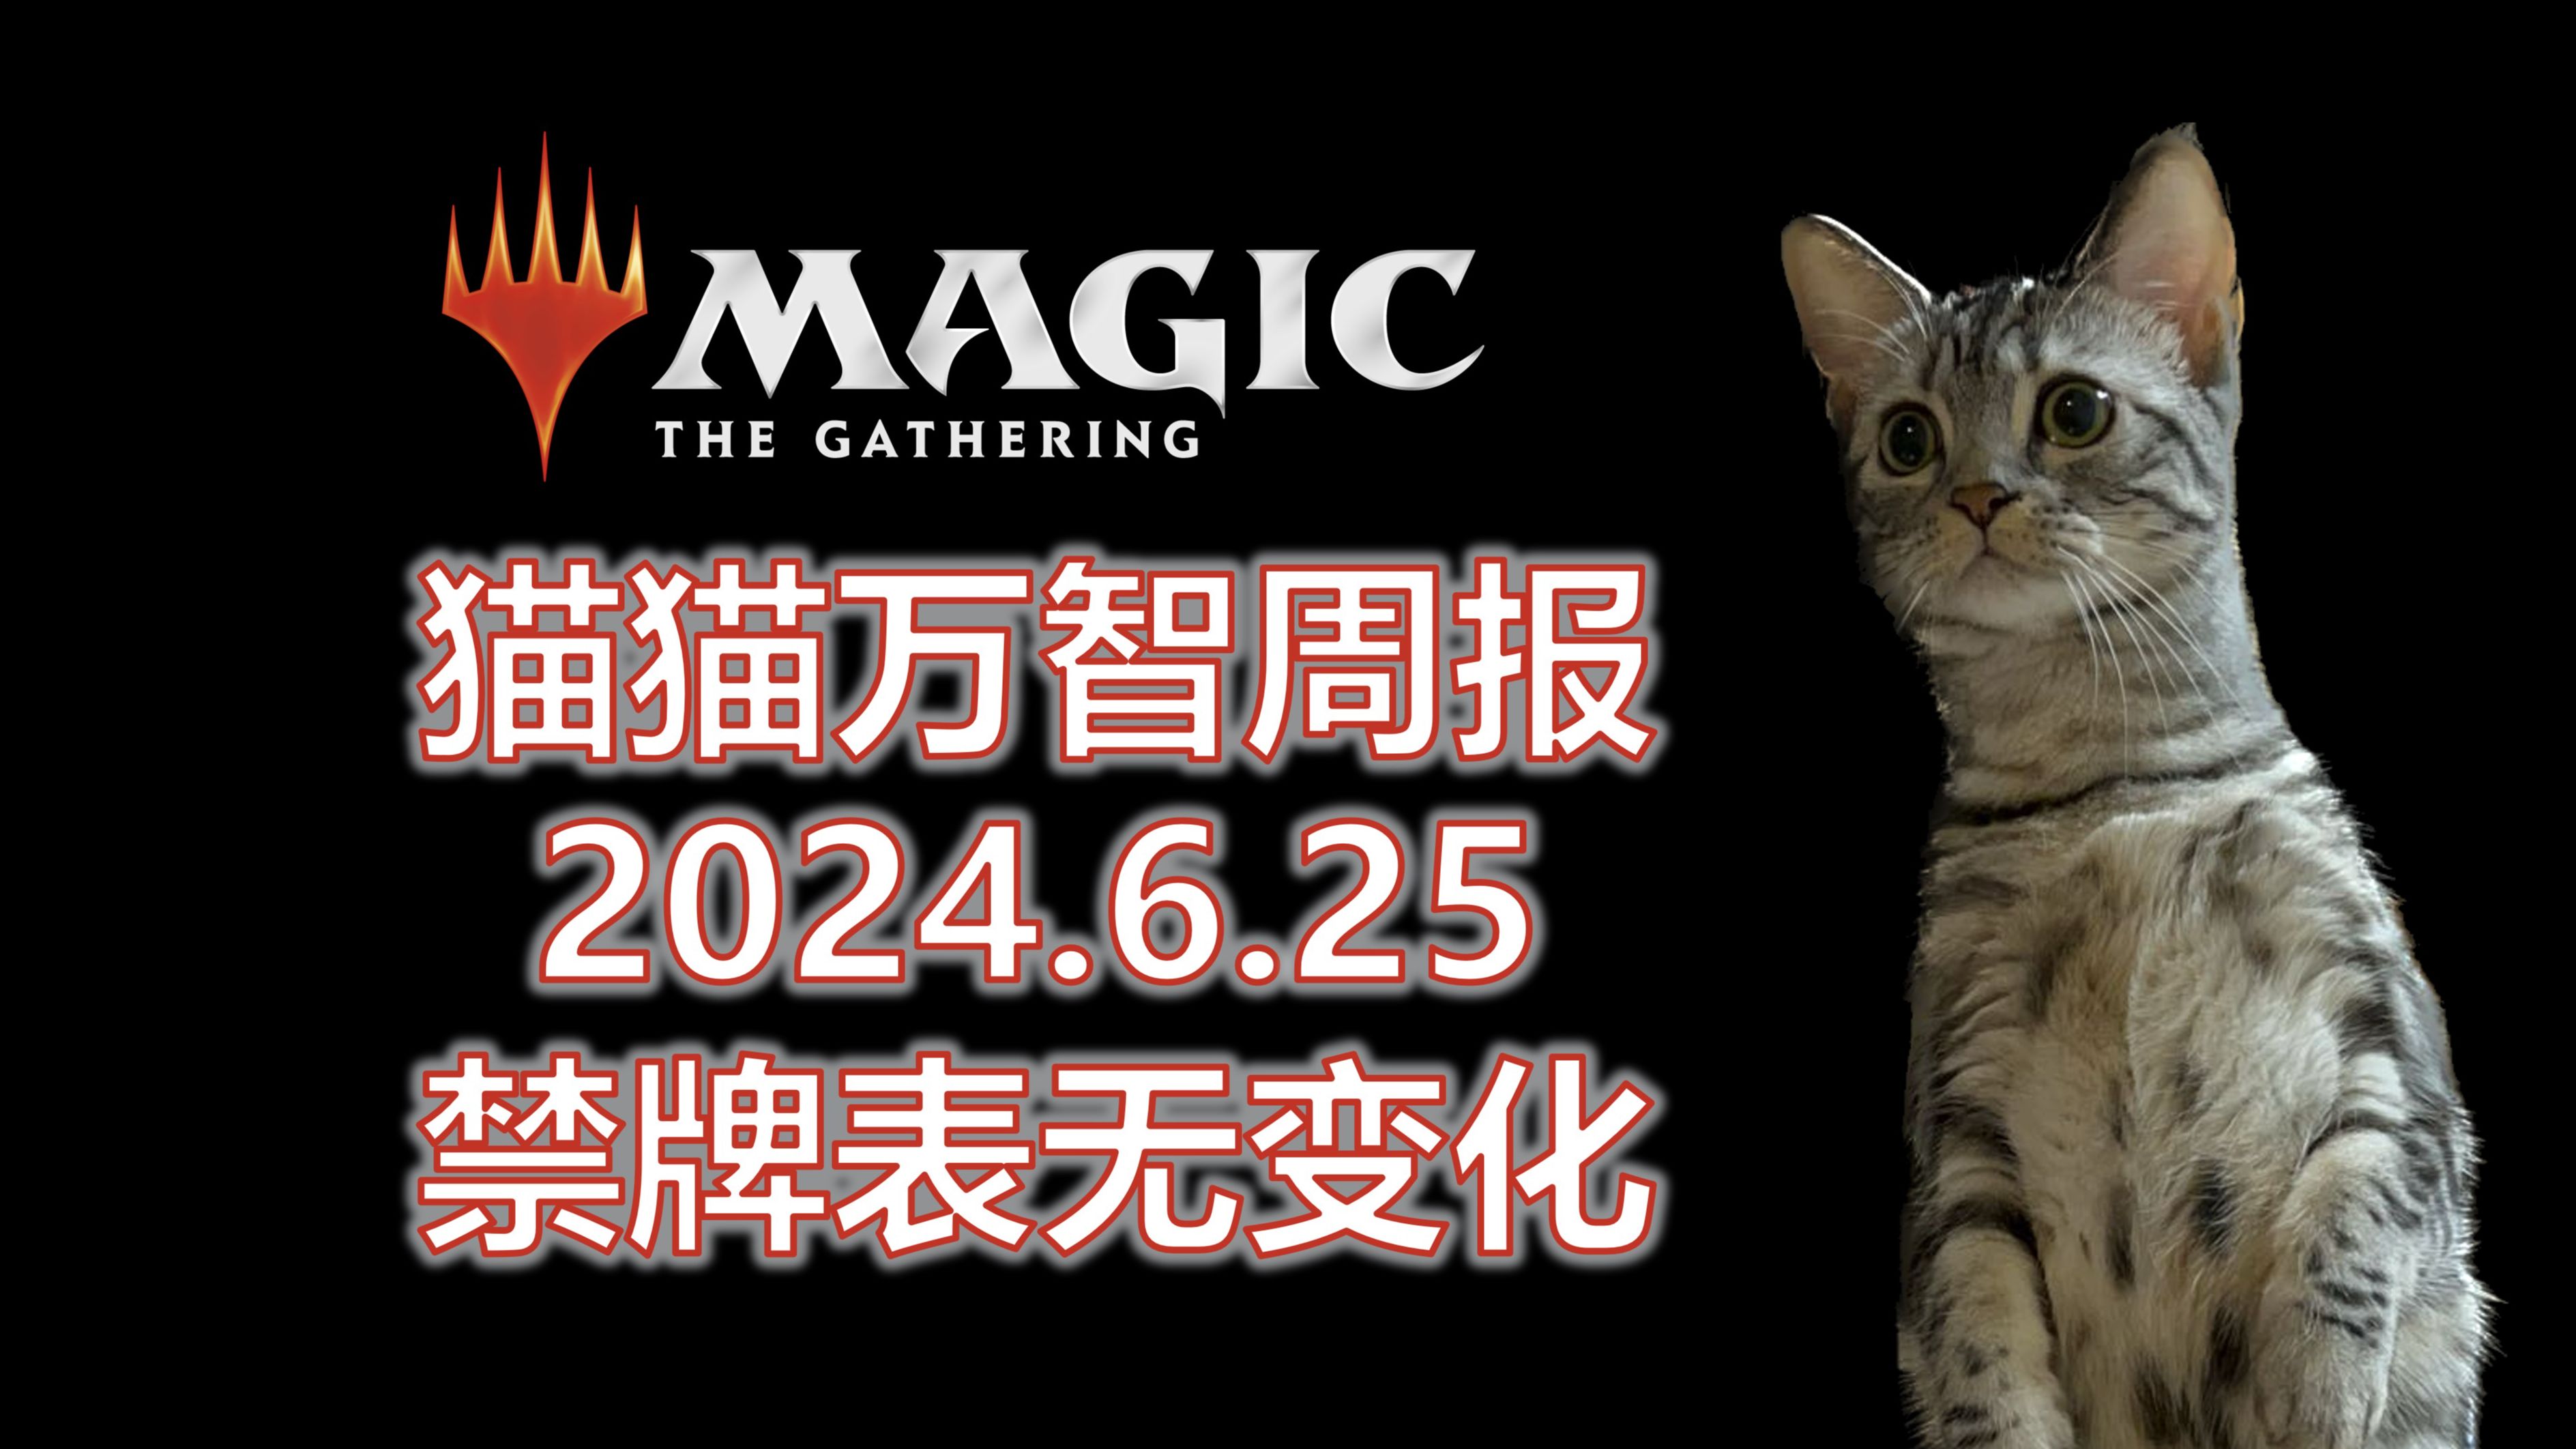 【万智牌】各赛制禁牌表无变化；新组合技制霸纯铁：猫猫万智周报6/25【Magic the Gathering】